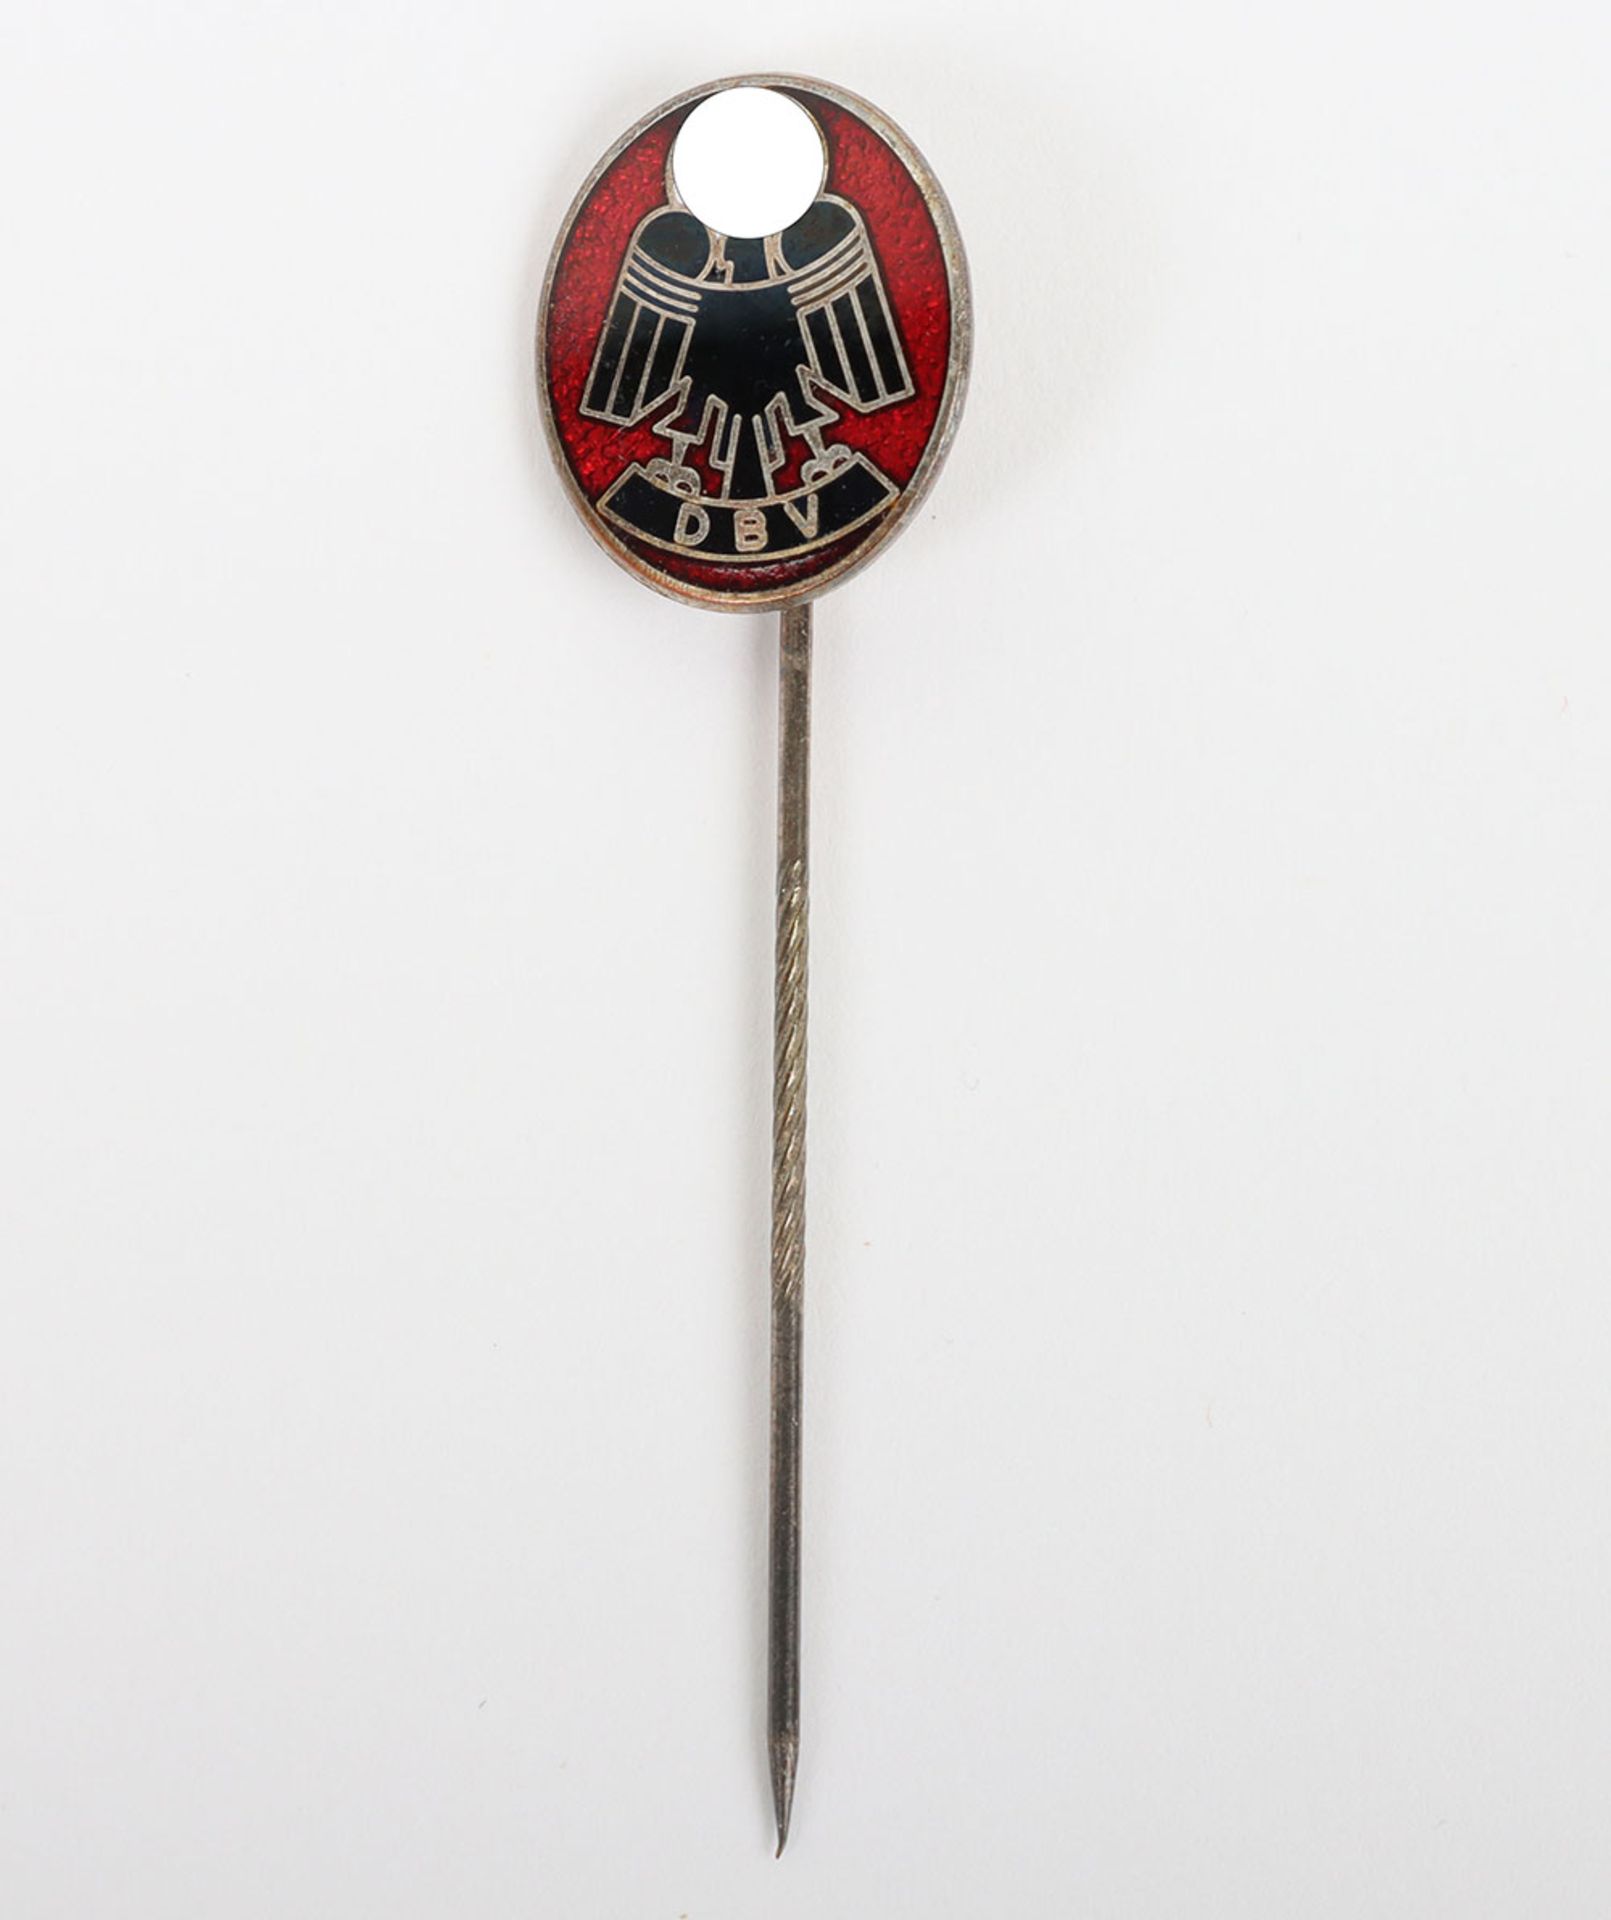 Third Reich D.B.V (Deutscher Buro und Behordenangestellten) Stick Pin